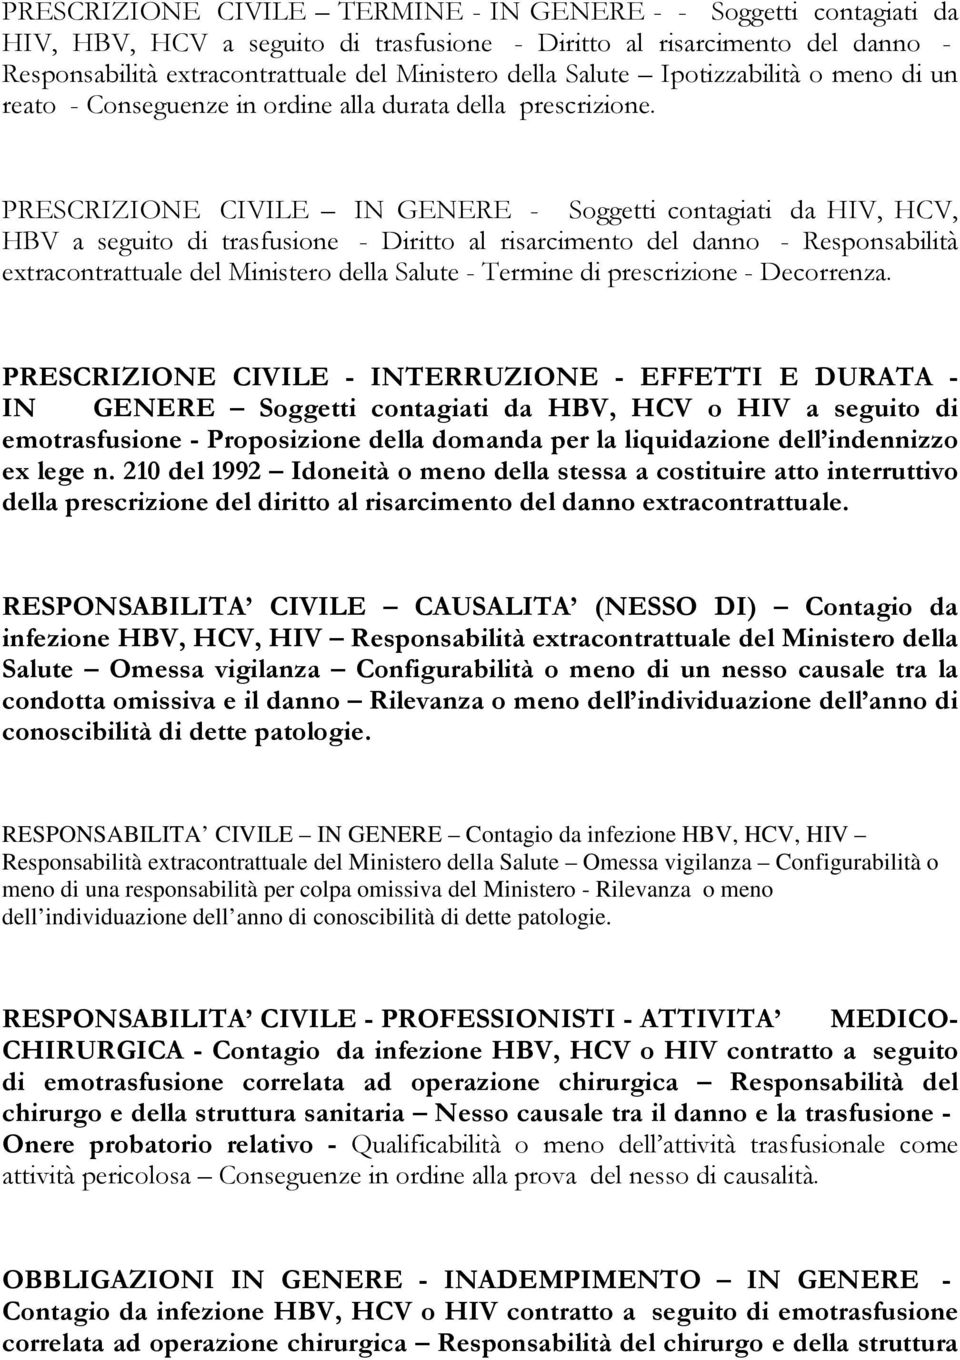 PRESCRIZIONE CIVILE IN GENERE - Soggetti contagiati da HIV, HCV, HBV a seguito di trasfusione - Diritto al risarcimento del danno - Responsabilità extracontrattuale del Ministero della Salute -